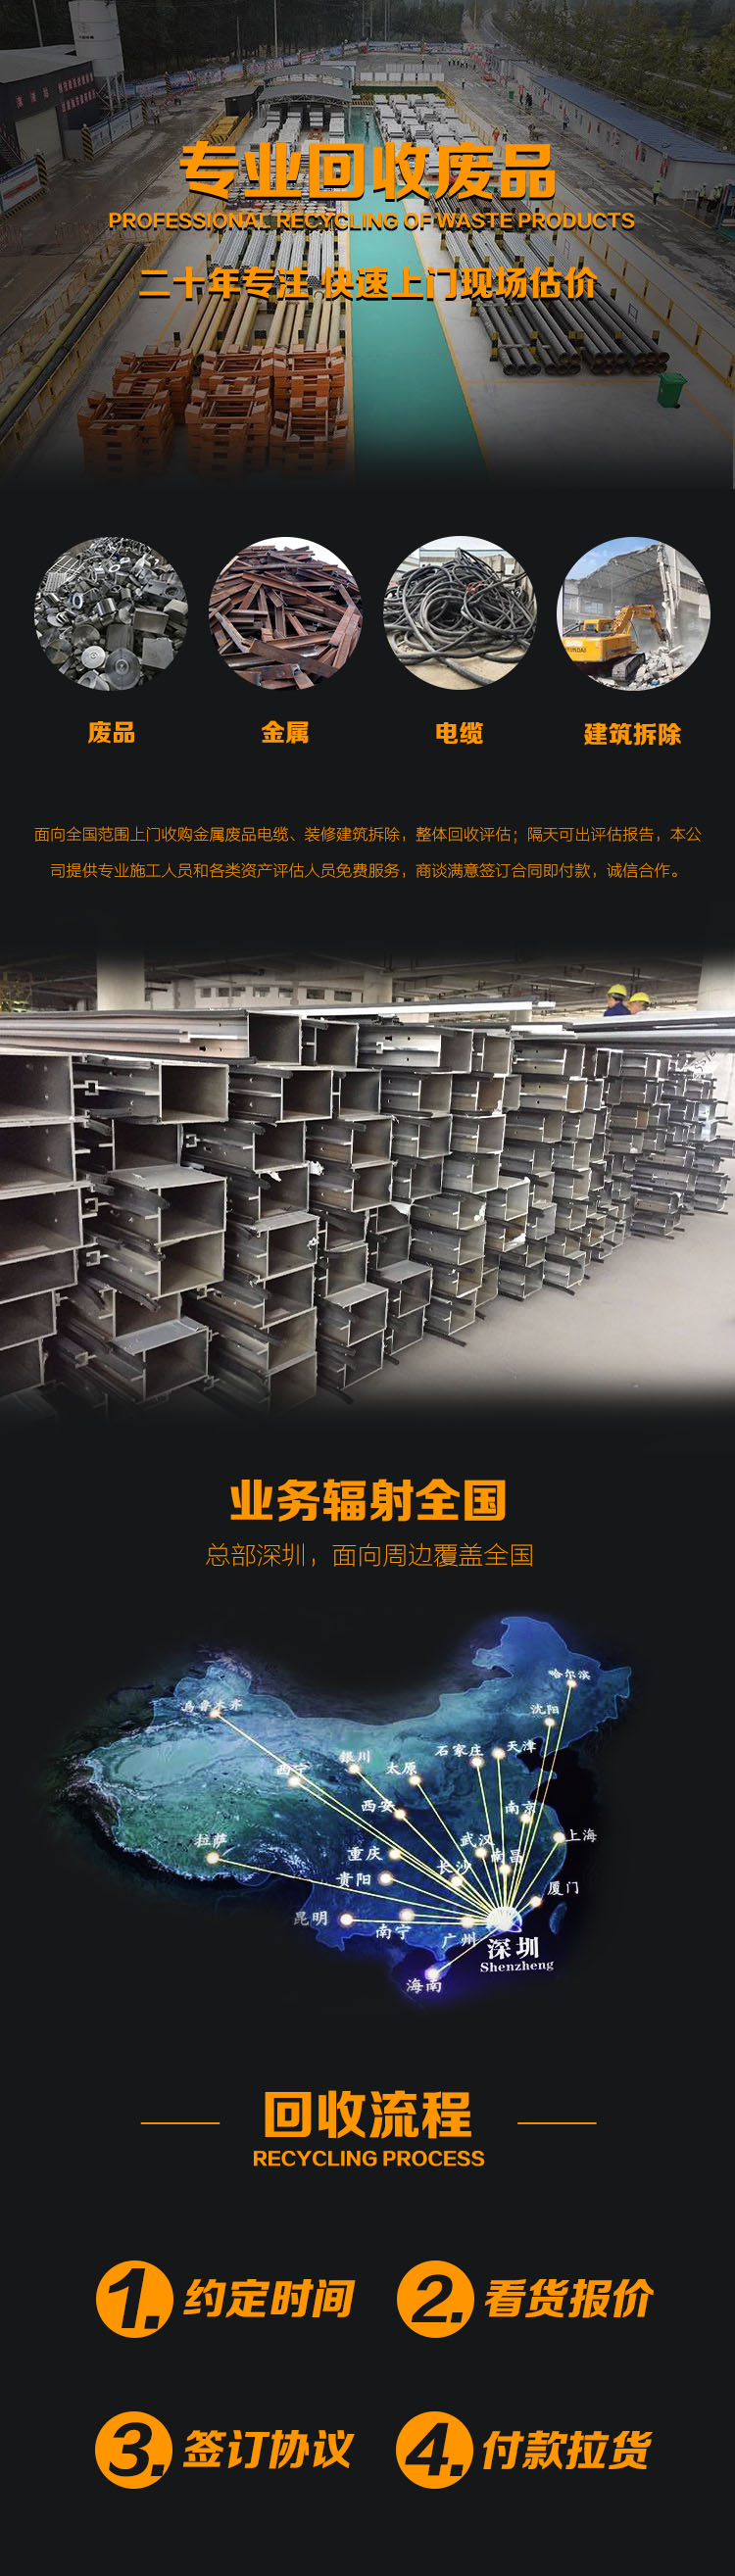 深圳电缆回收 工厂电线拆除工地废电缆回收